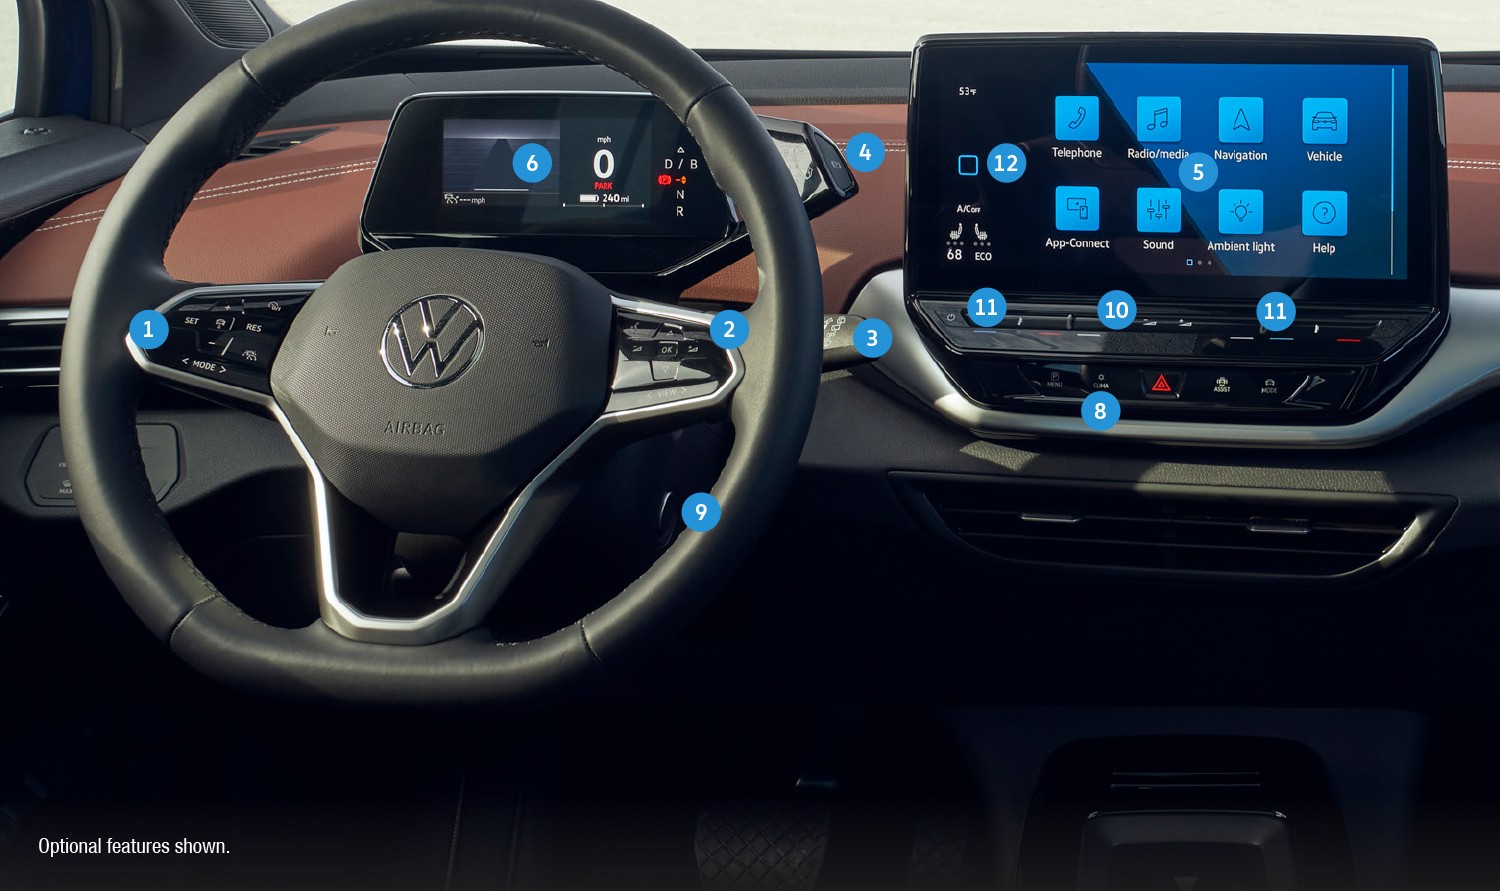 How to Unlock Steering Wheel Push to Start Volkswagen